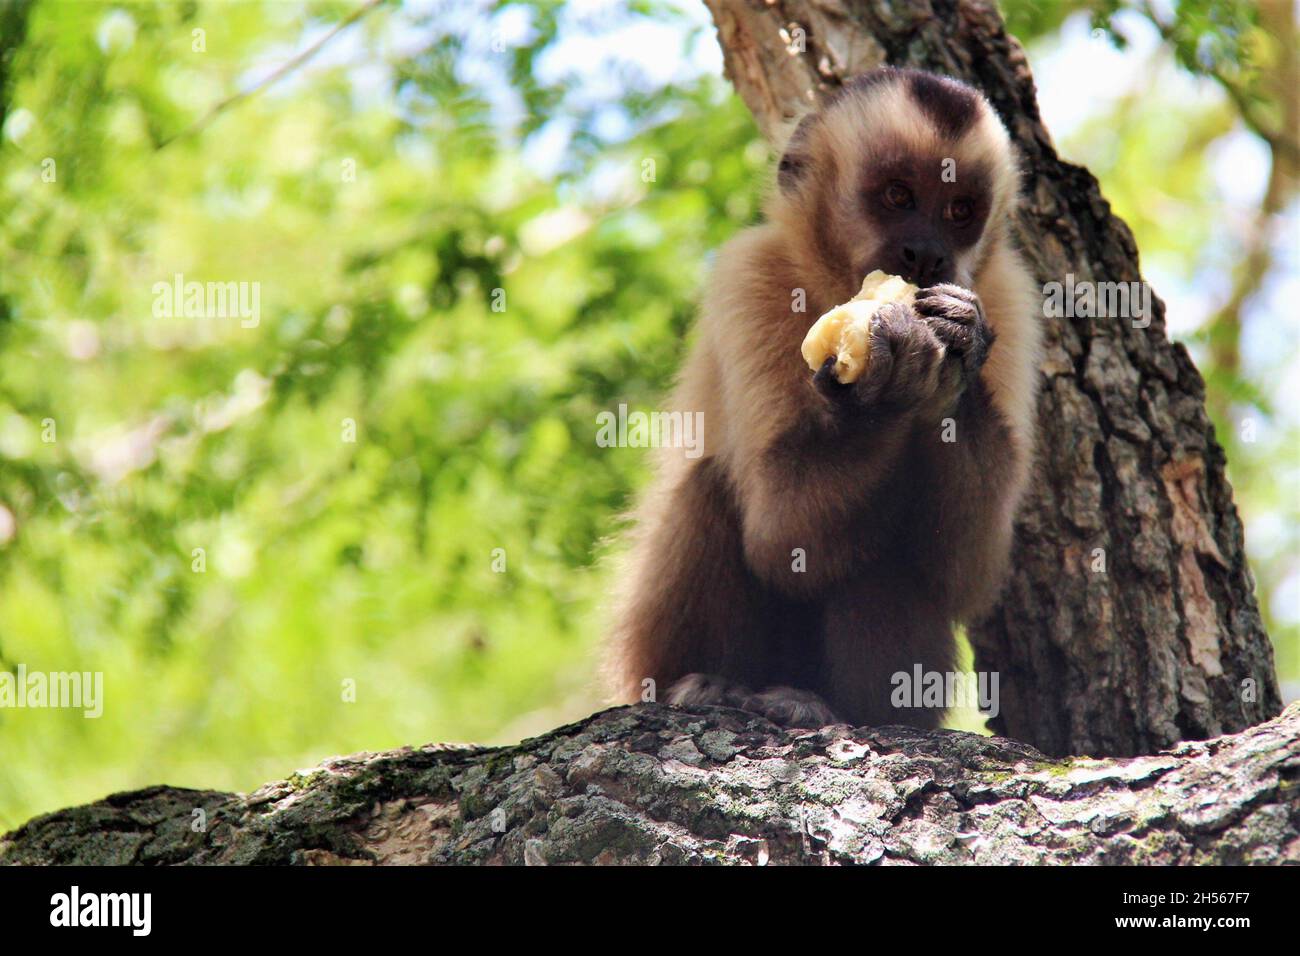 Scimmia, in cima ad un tronco d'albero, mangiando una banana con entrambe le mani. Bonito - Mato Grosso do sul - Brasile. Foto Stock